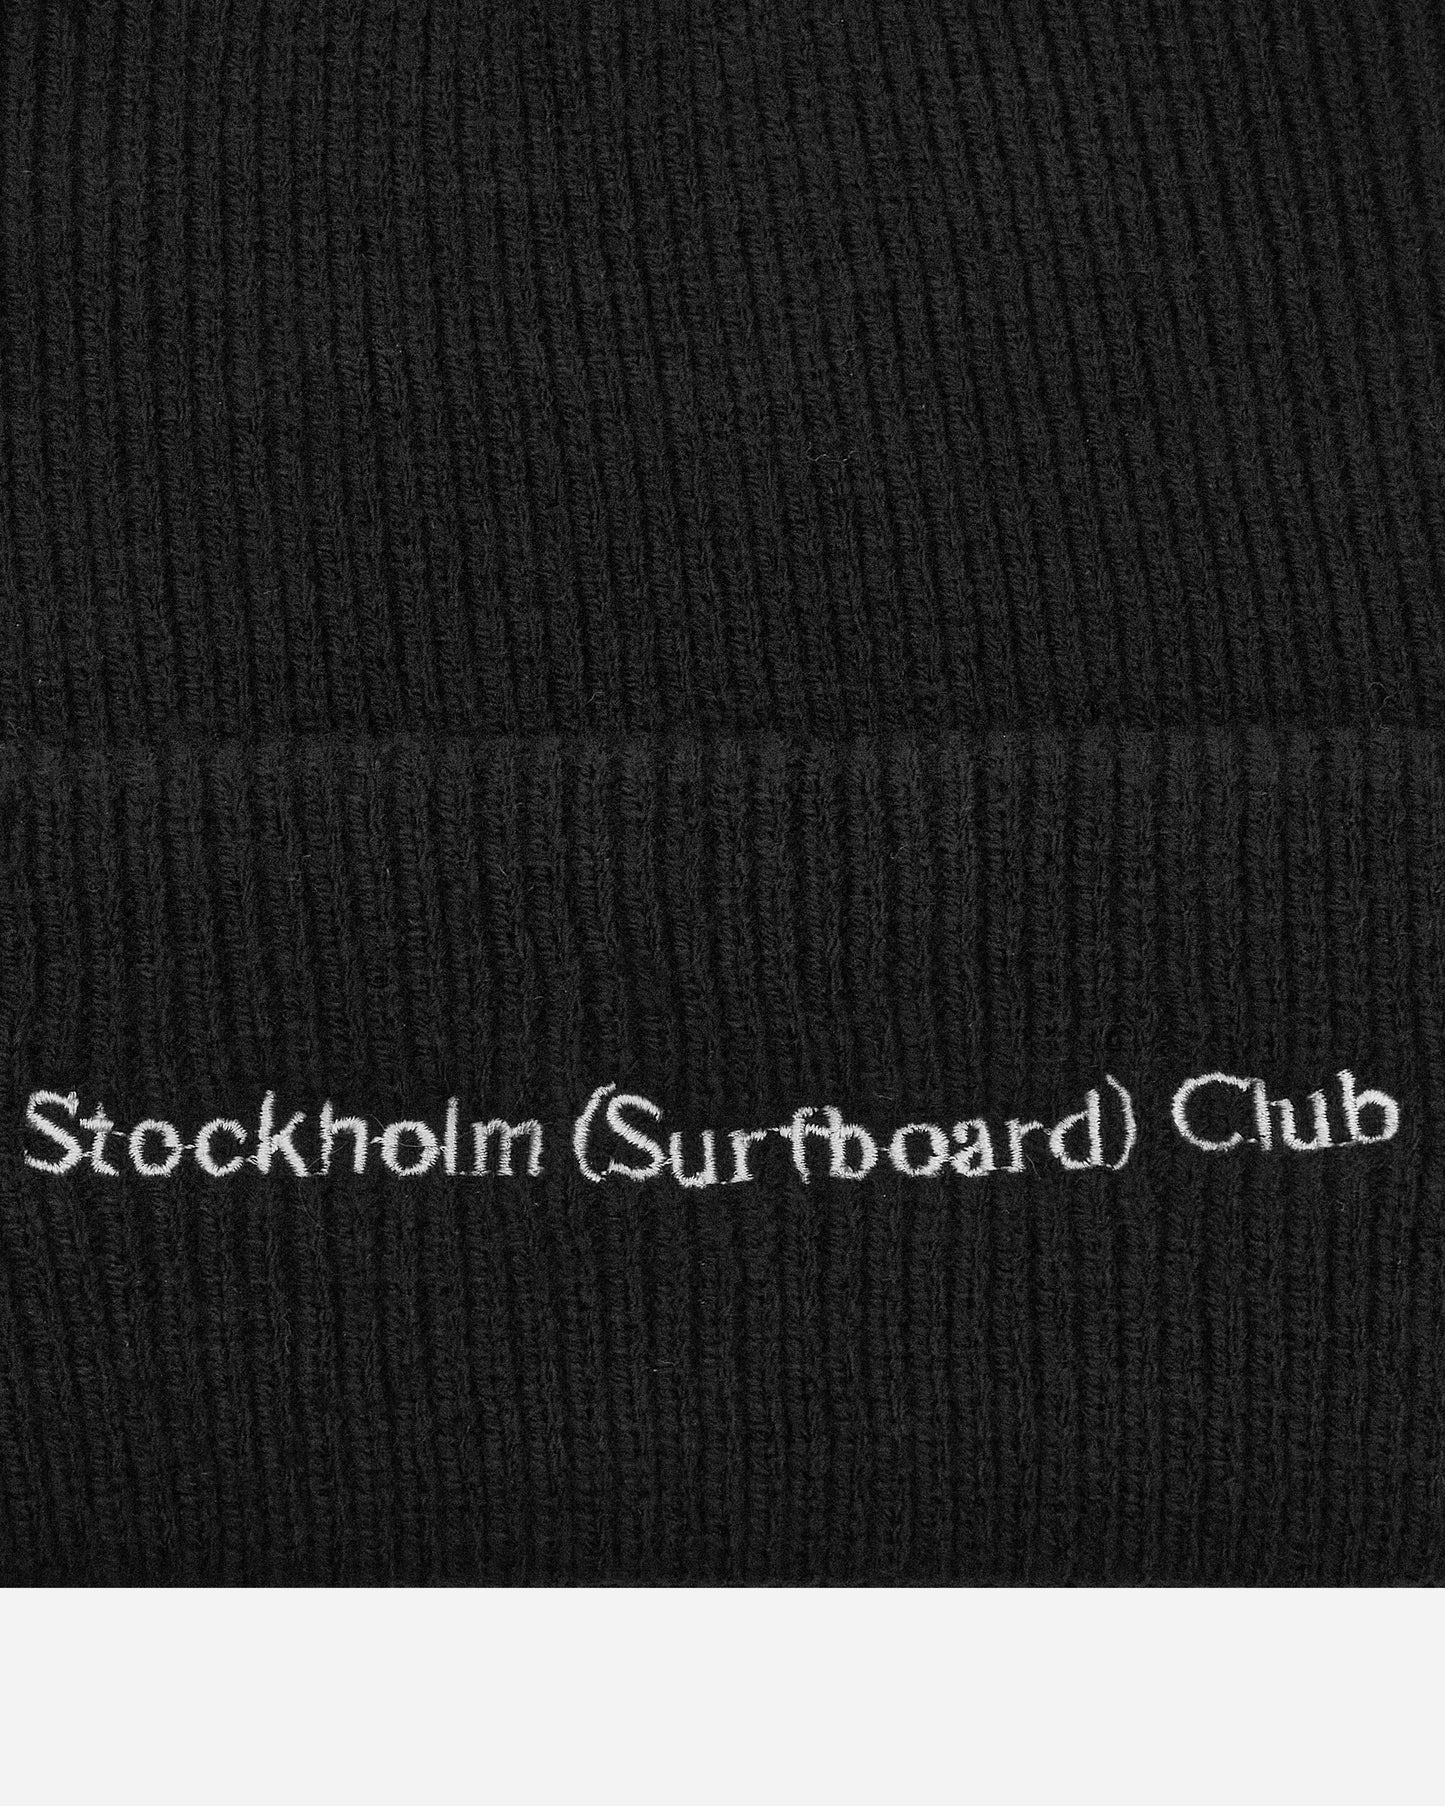 Stockholm (Surfboard) Club Mossa Black Hats Beanies MU7B90 001